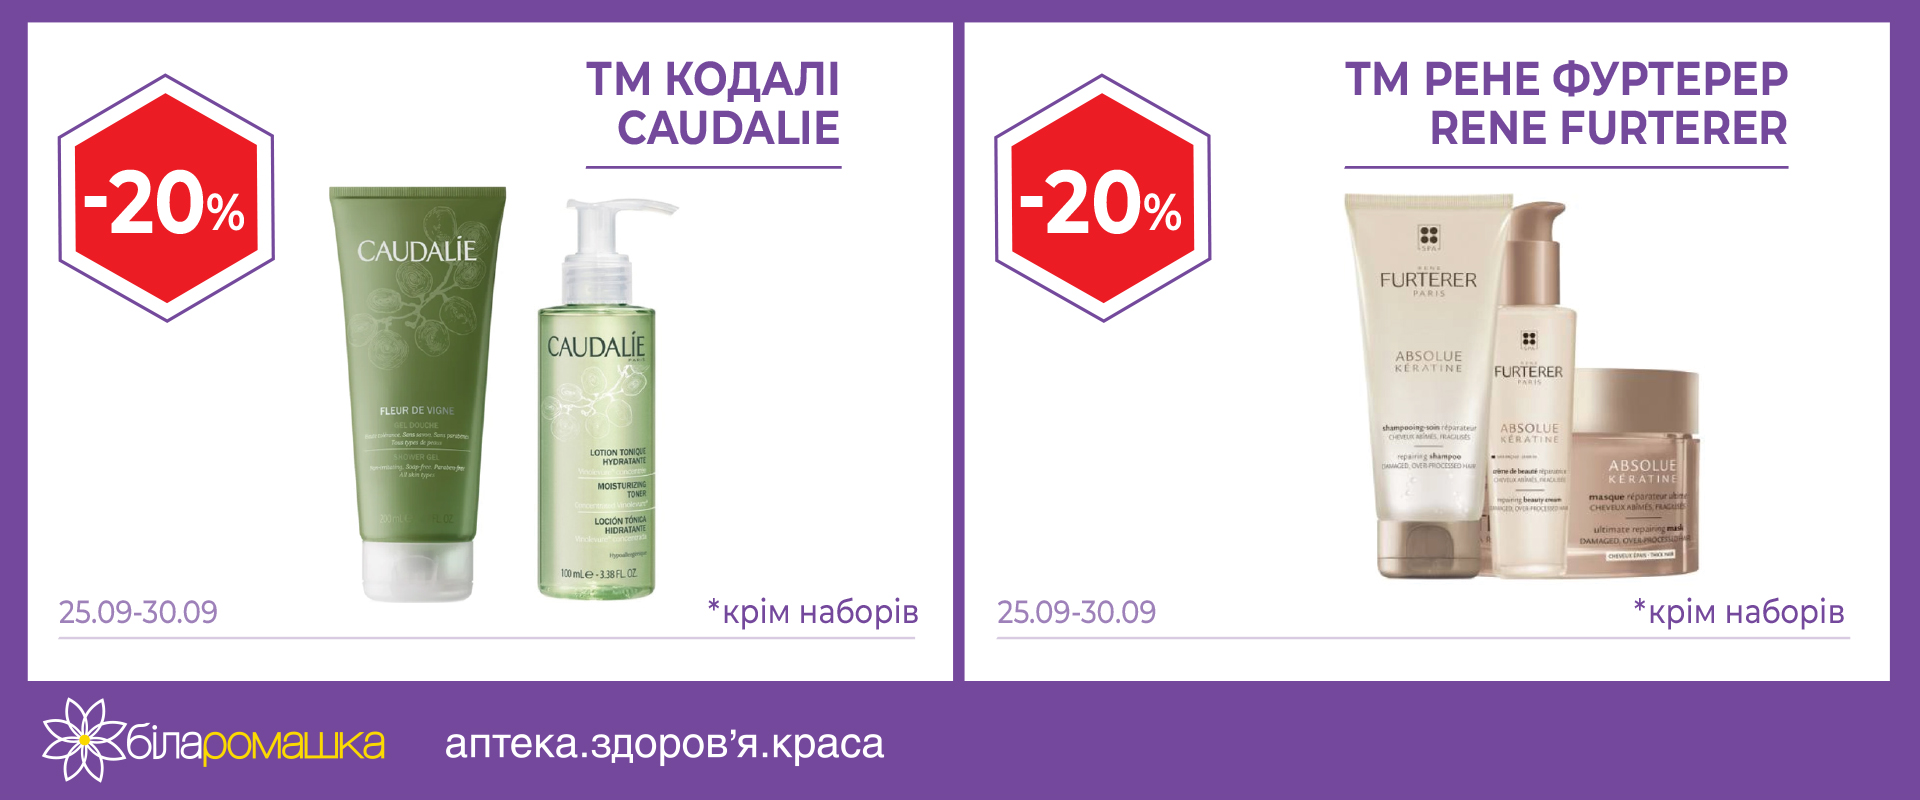 -20% on cosmetics in "Bila Romashka"